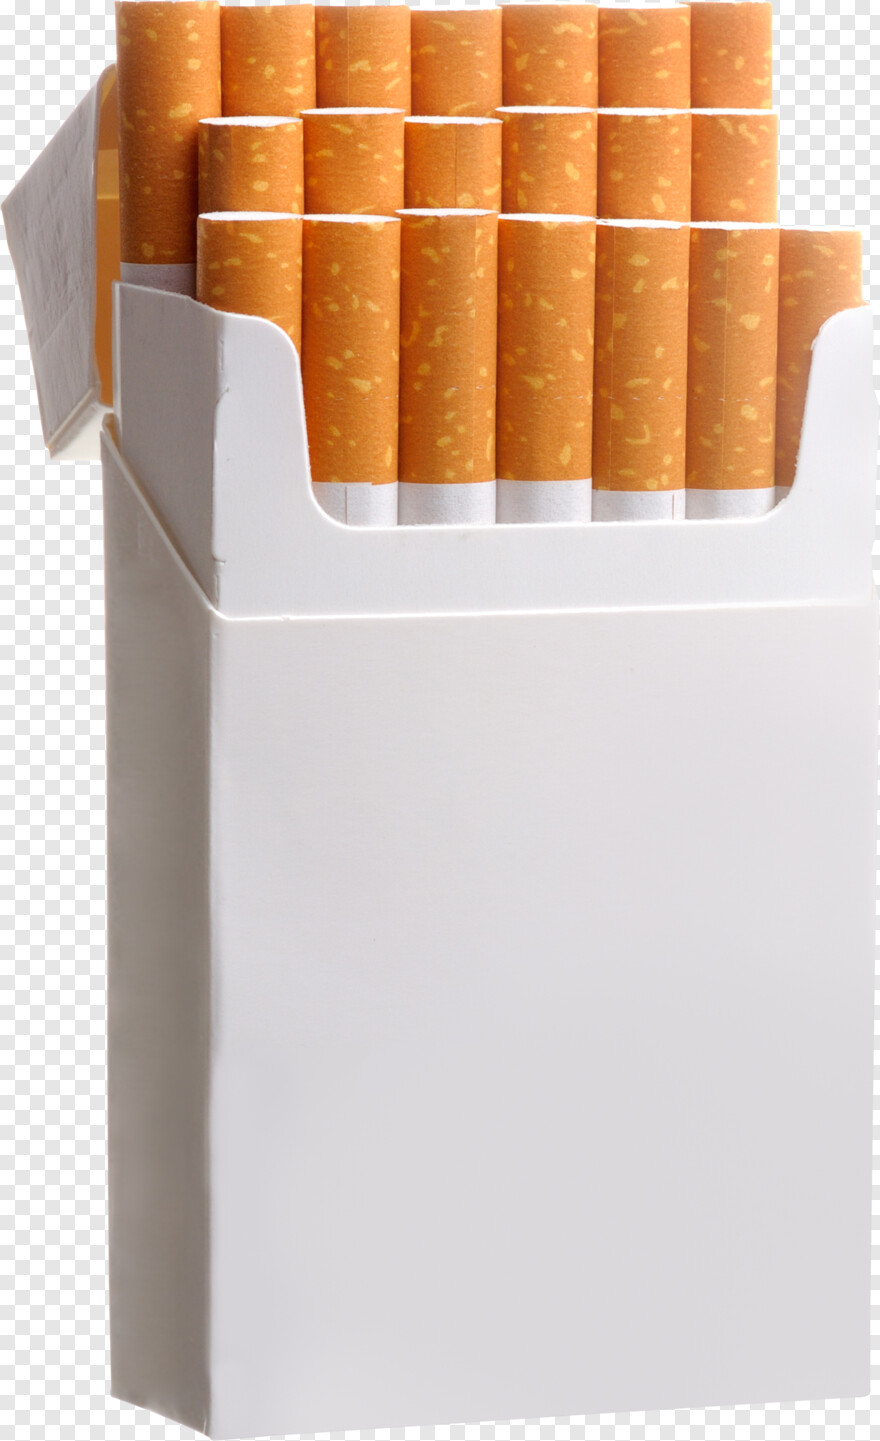 cigarettes # 429020